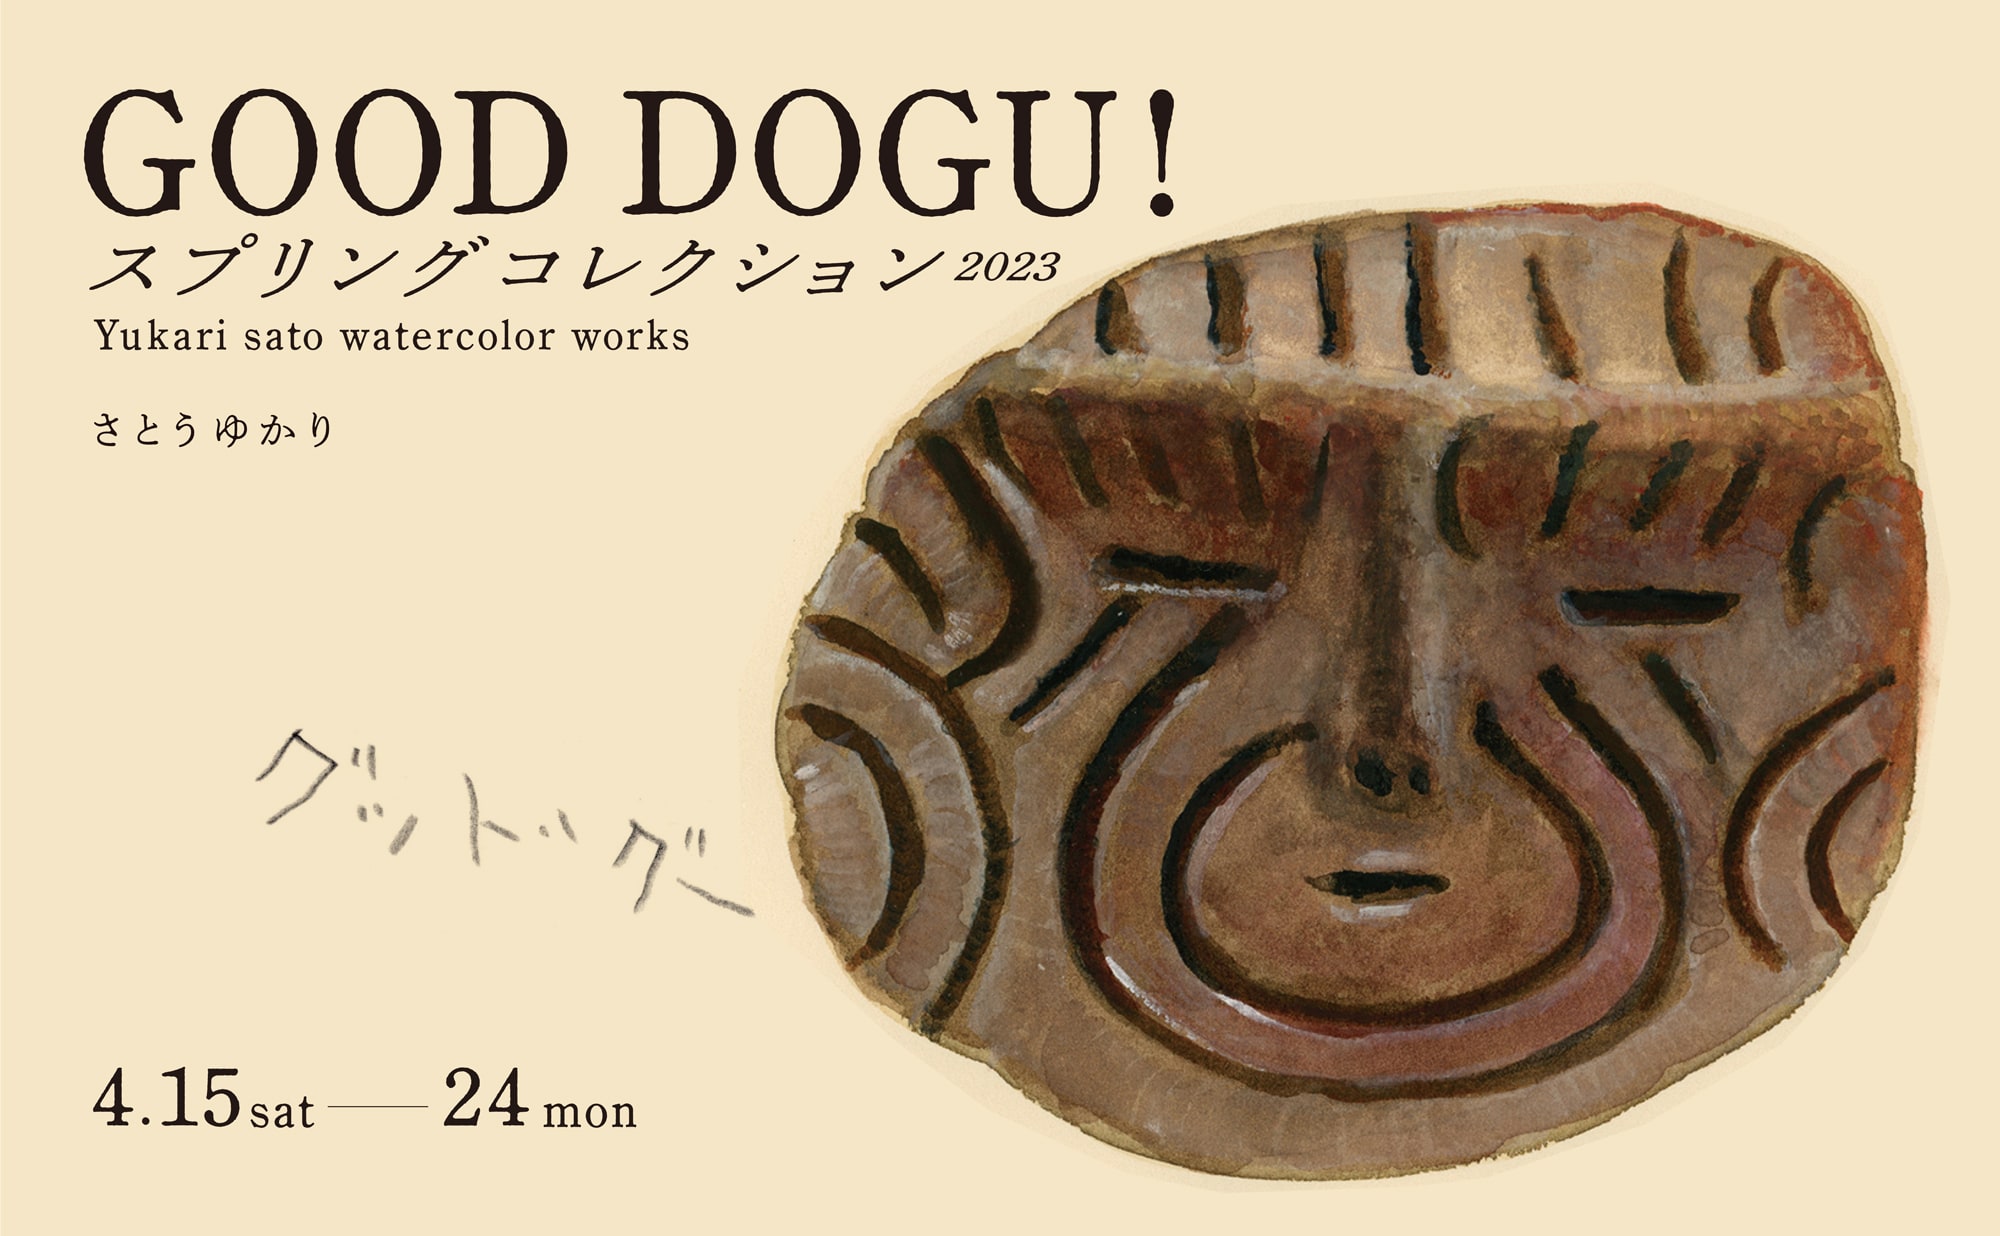 さとうゆかり個展「GOOD DOGU！スプリングコレクション2023」を開催します